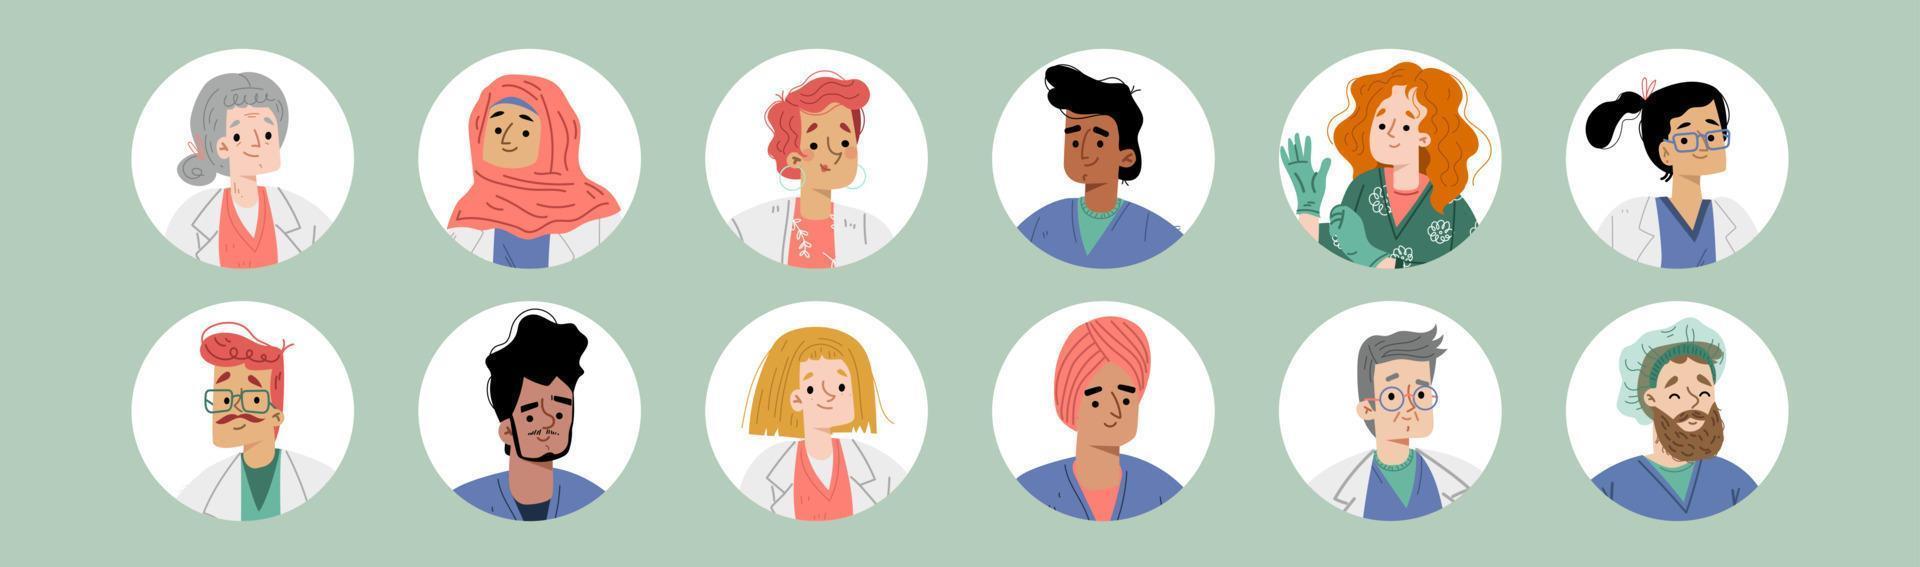 avatars av doktorer och sjuksköterskor, olika människor vektor